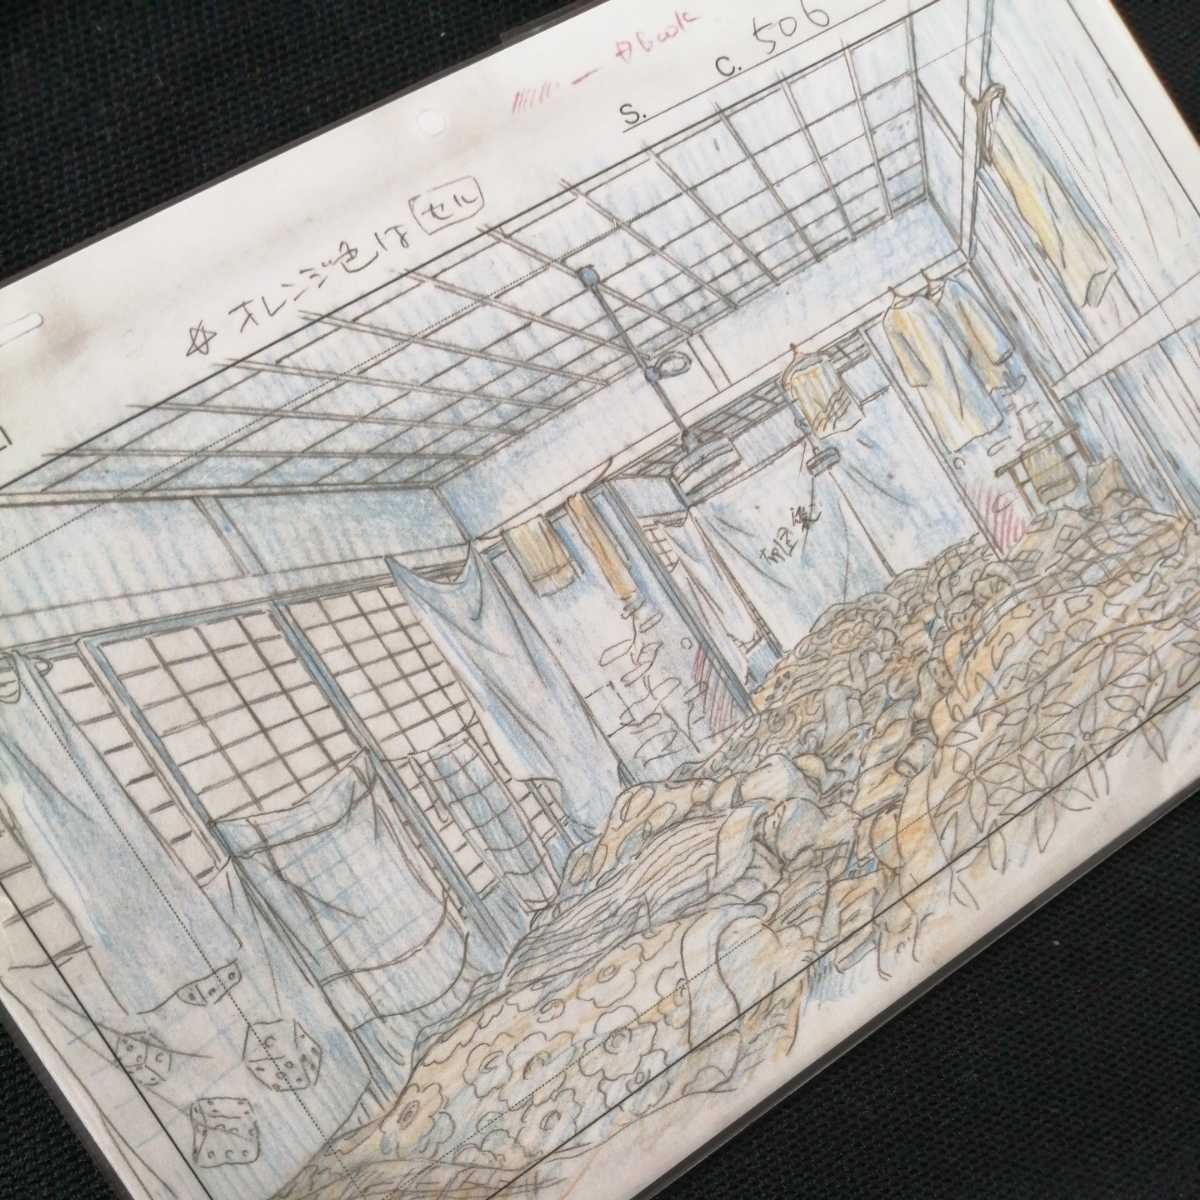  Studio Ghibli тысяч . тысяч .. бог .. расположение порез . осмотр ) Ghibli открытка постер исходная картина цифровая картинка расположение выставка Miyazaki .